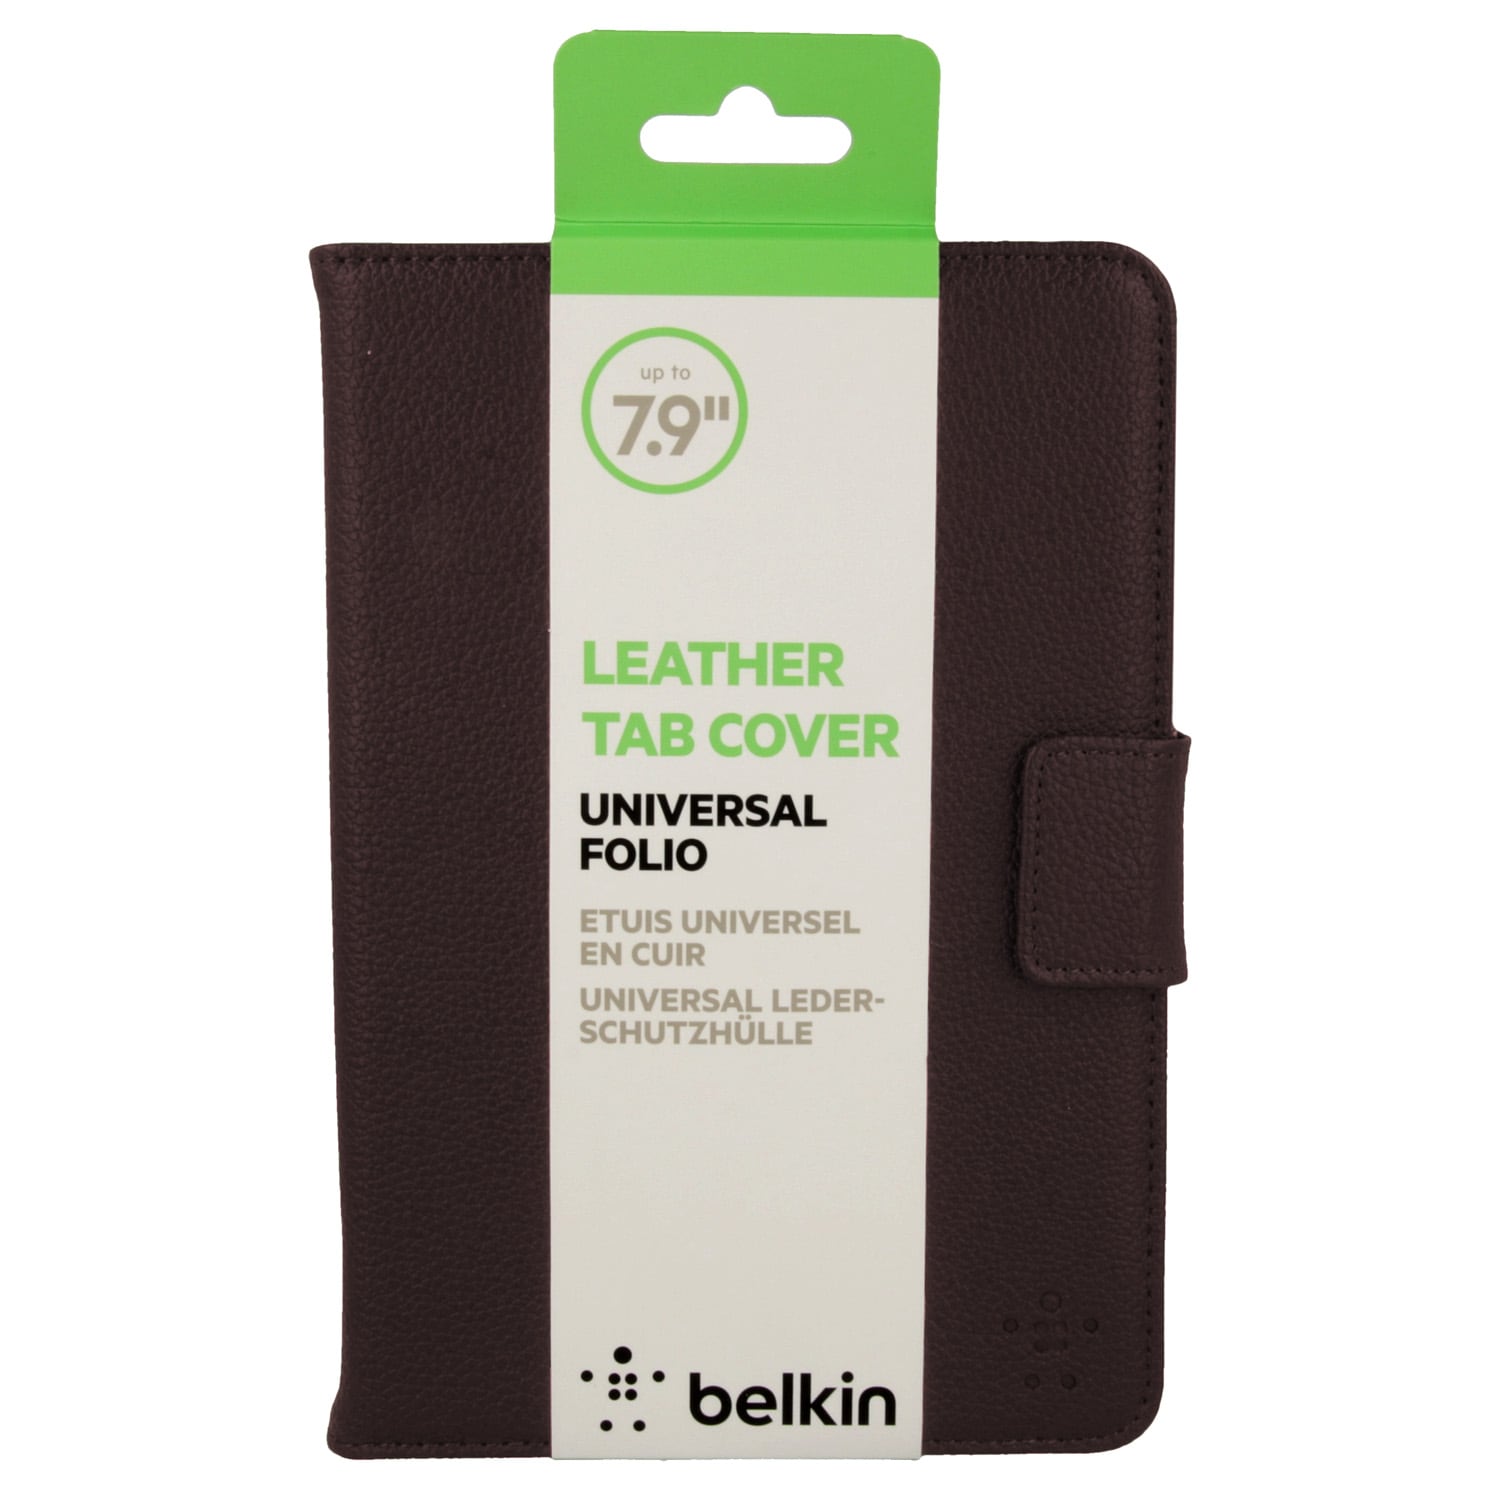 Belkin lædercover for Tablets op til  7.9"